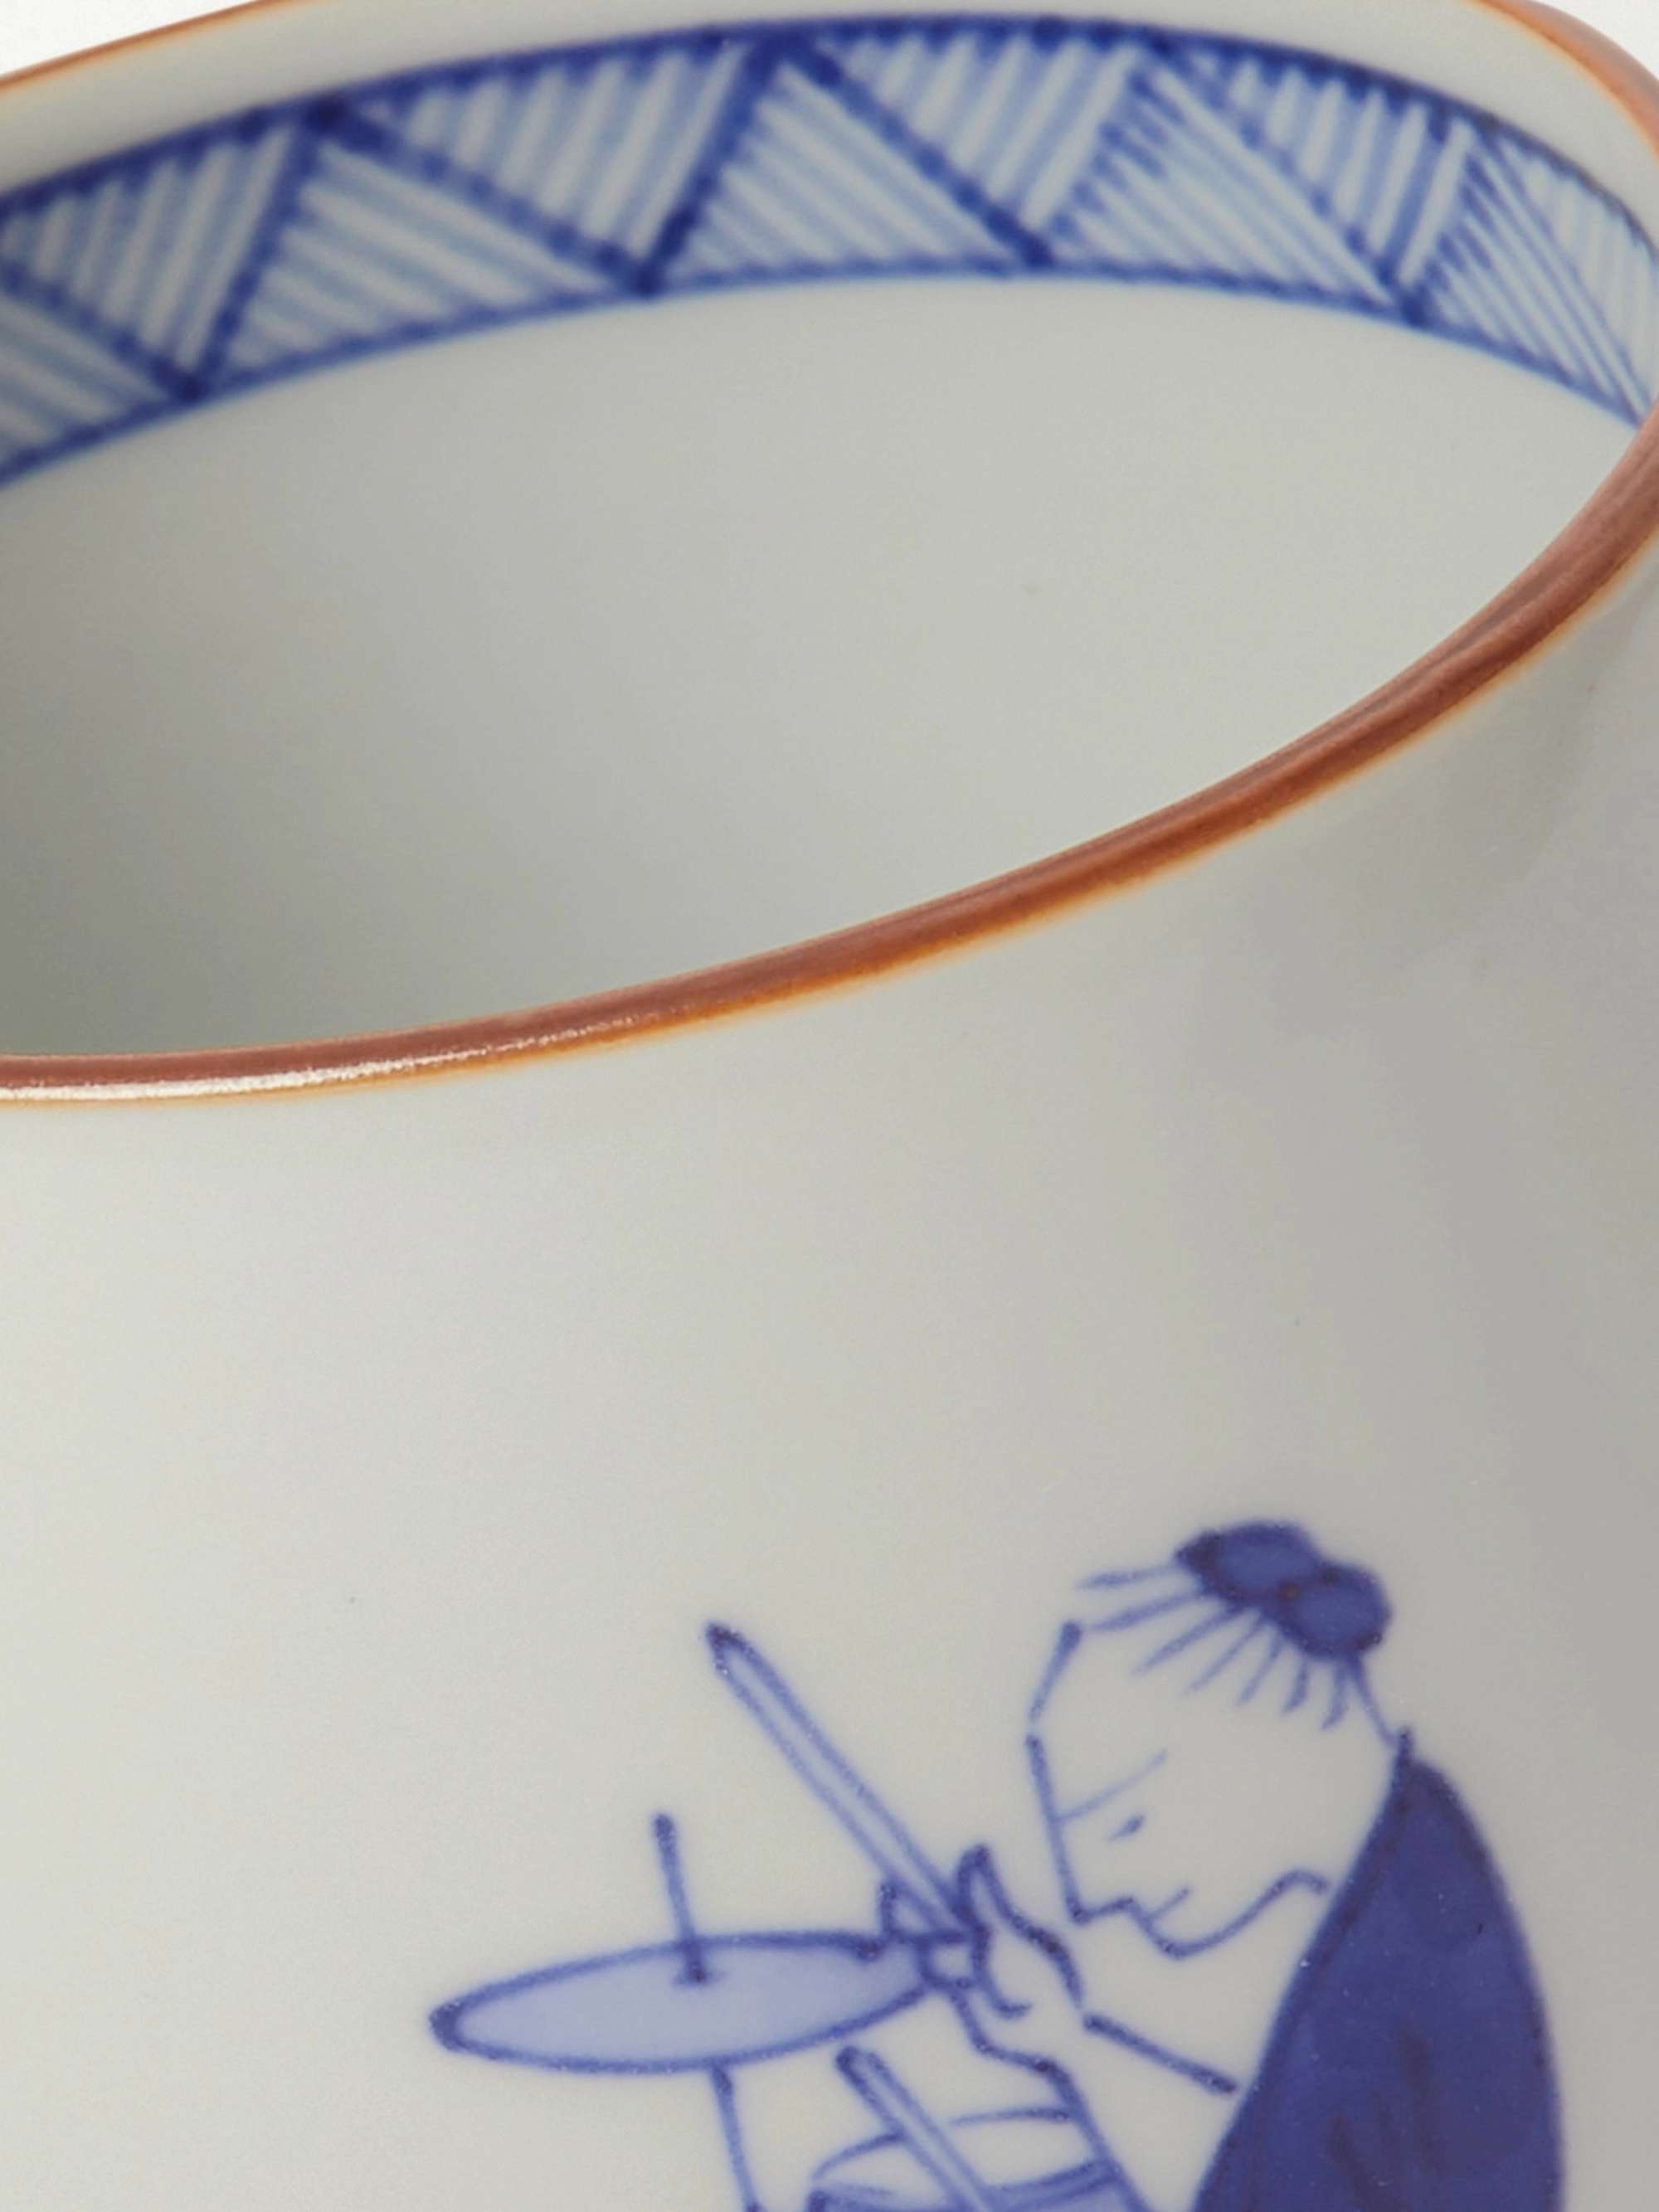 JAPAN BEST Painted Porcelain Teacup